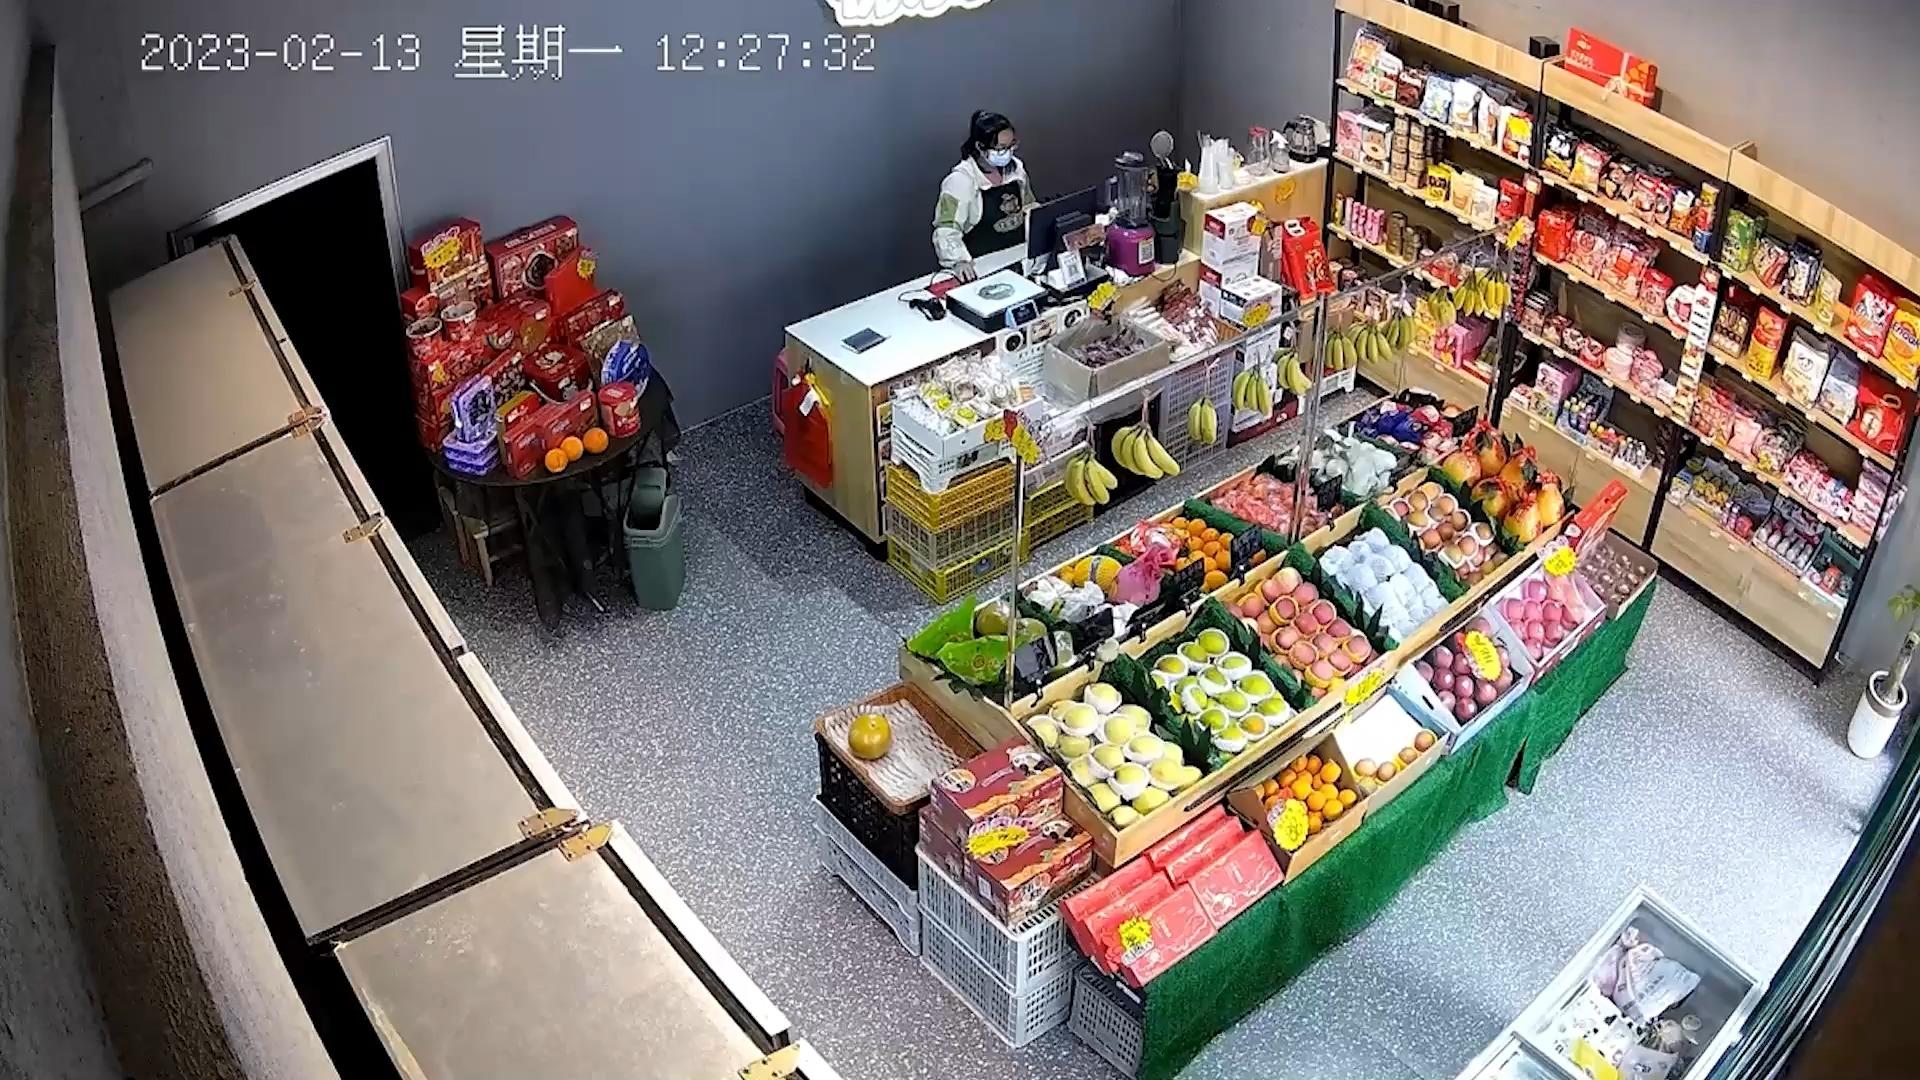 Auto rauscht in Supermarkt! Horror-Crash in China